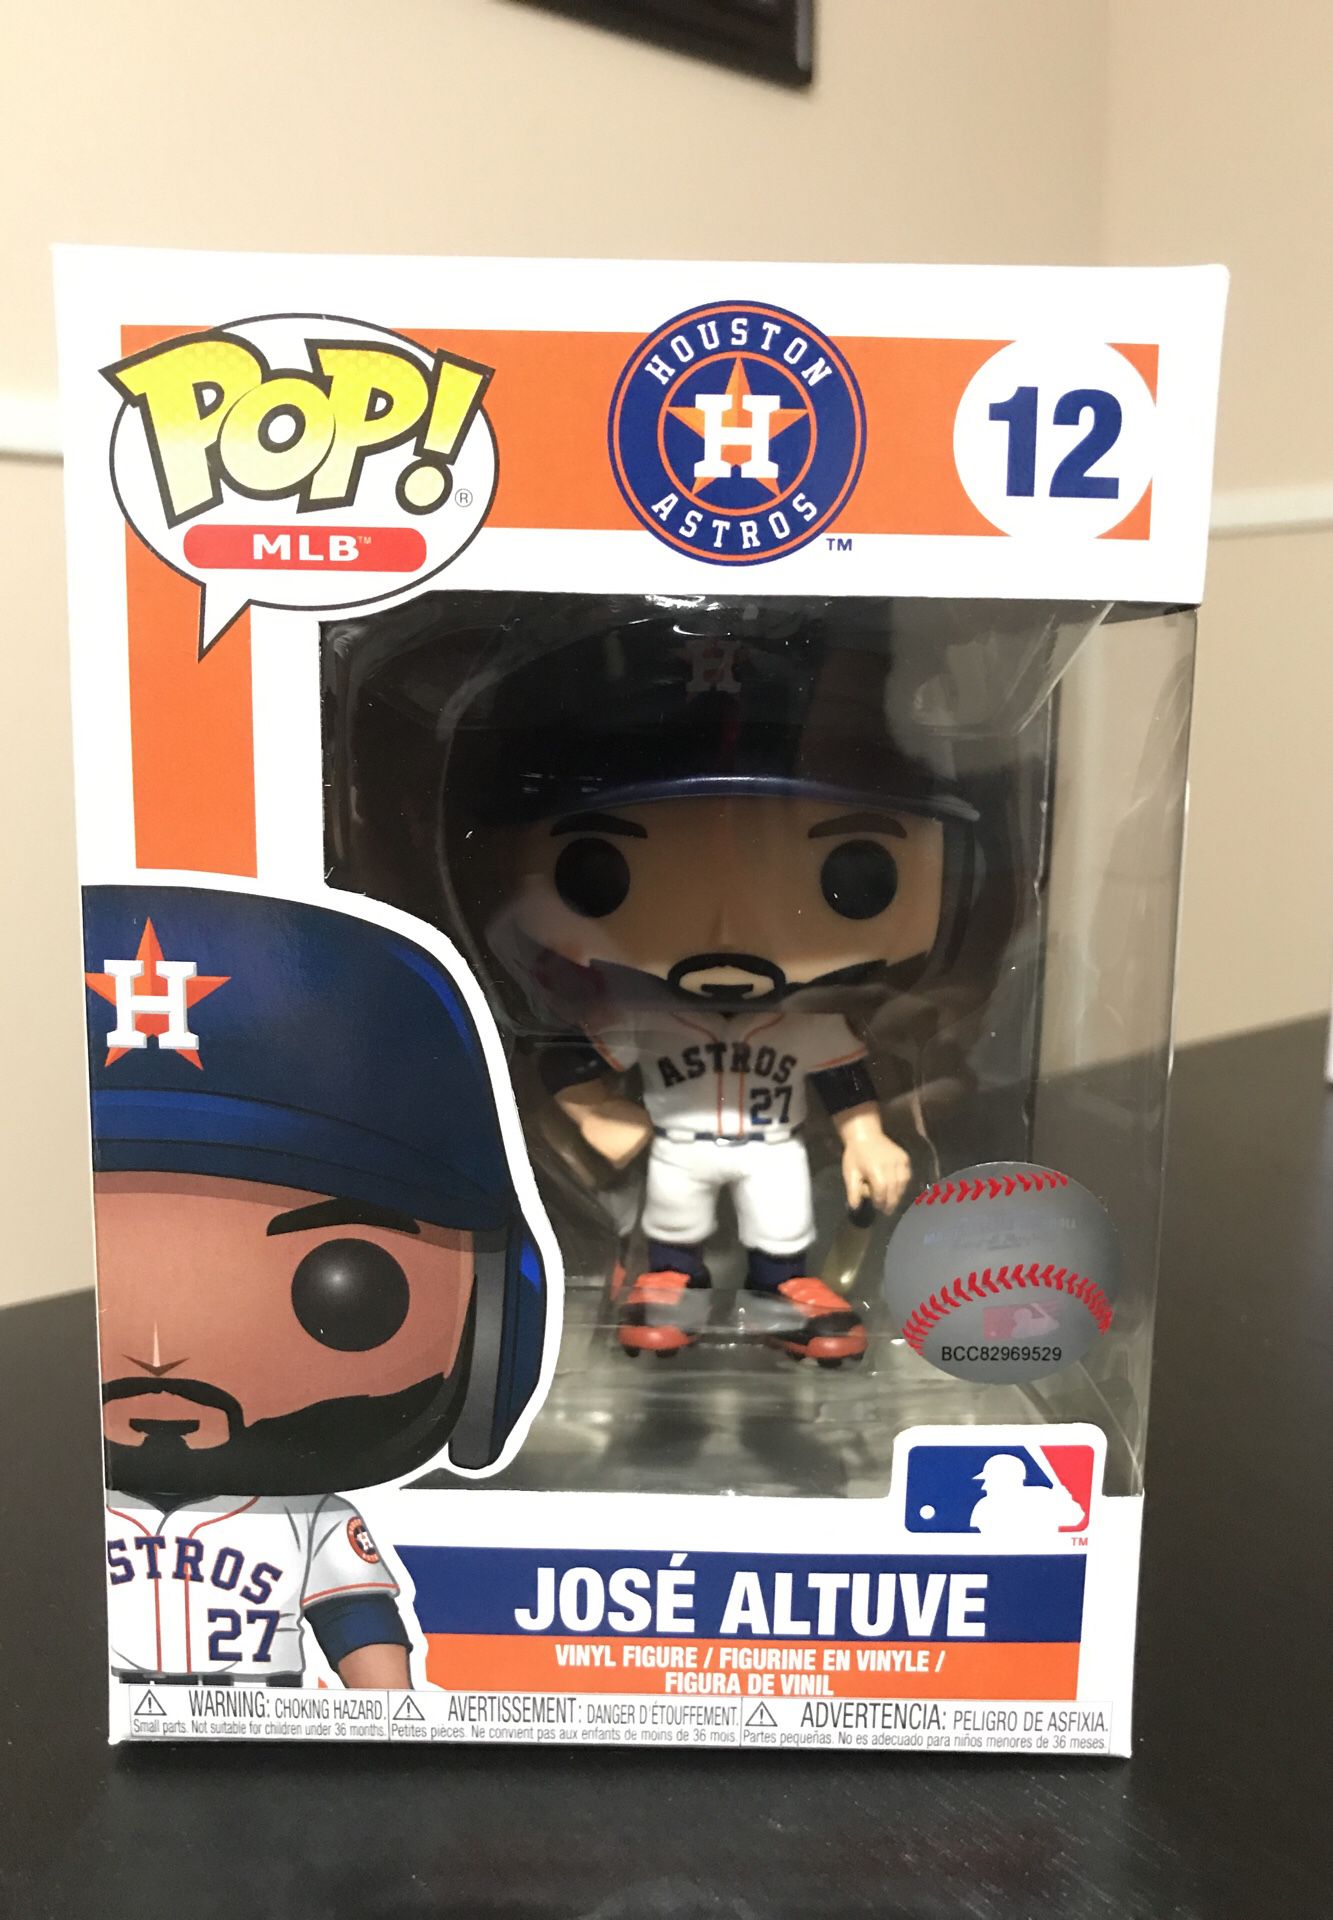 MLB Huston Astros Jose Altuve Funko Pop! Vinyl